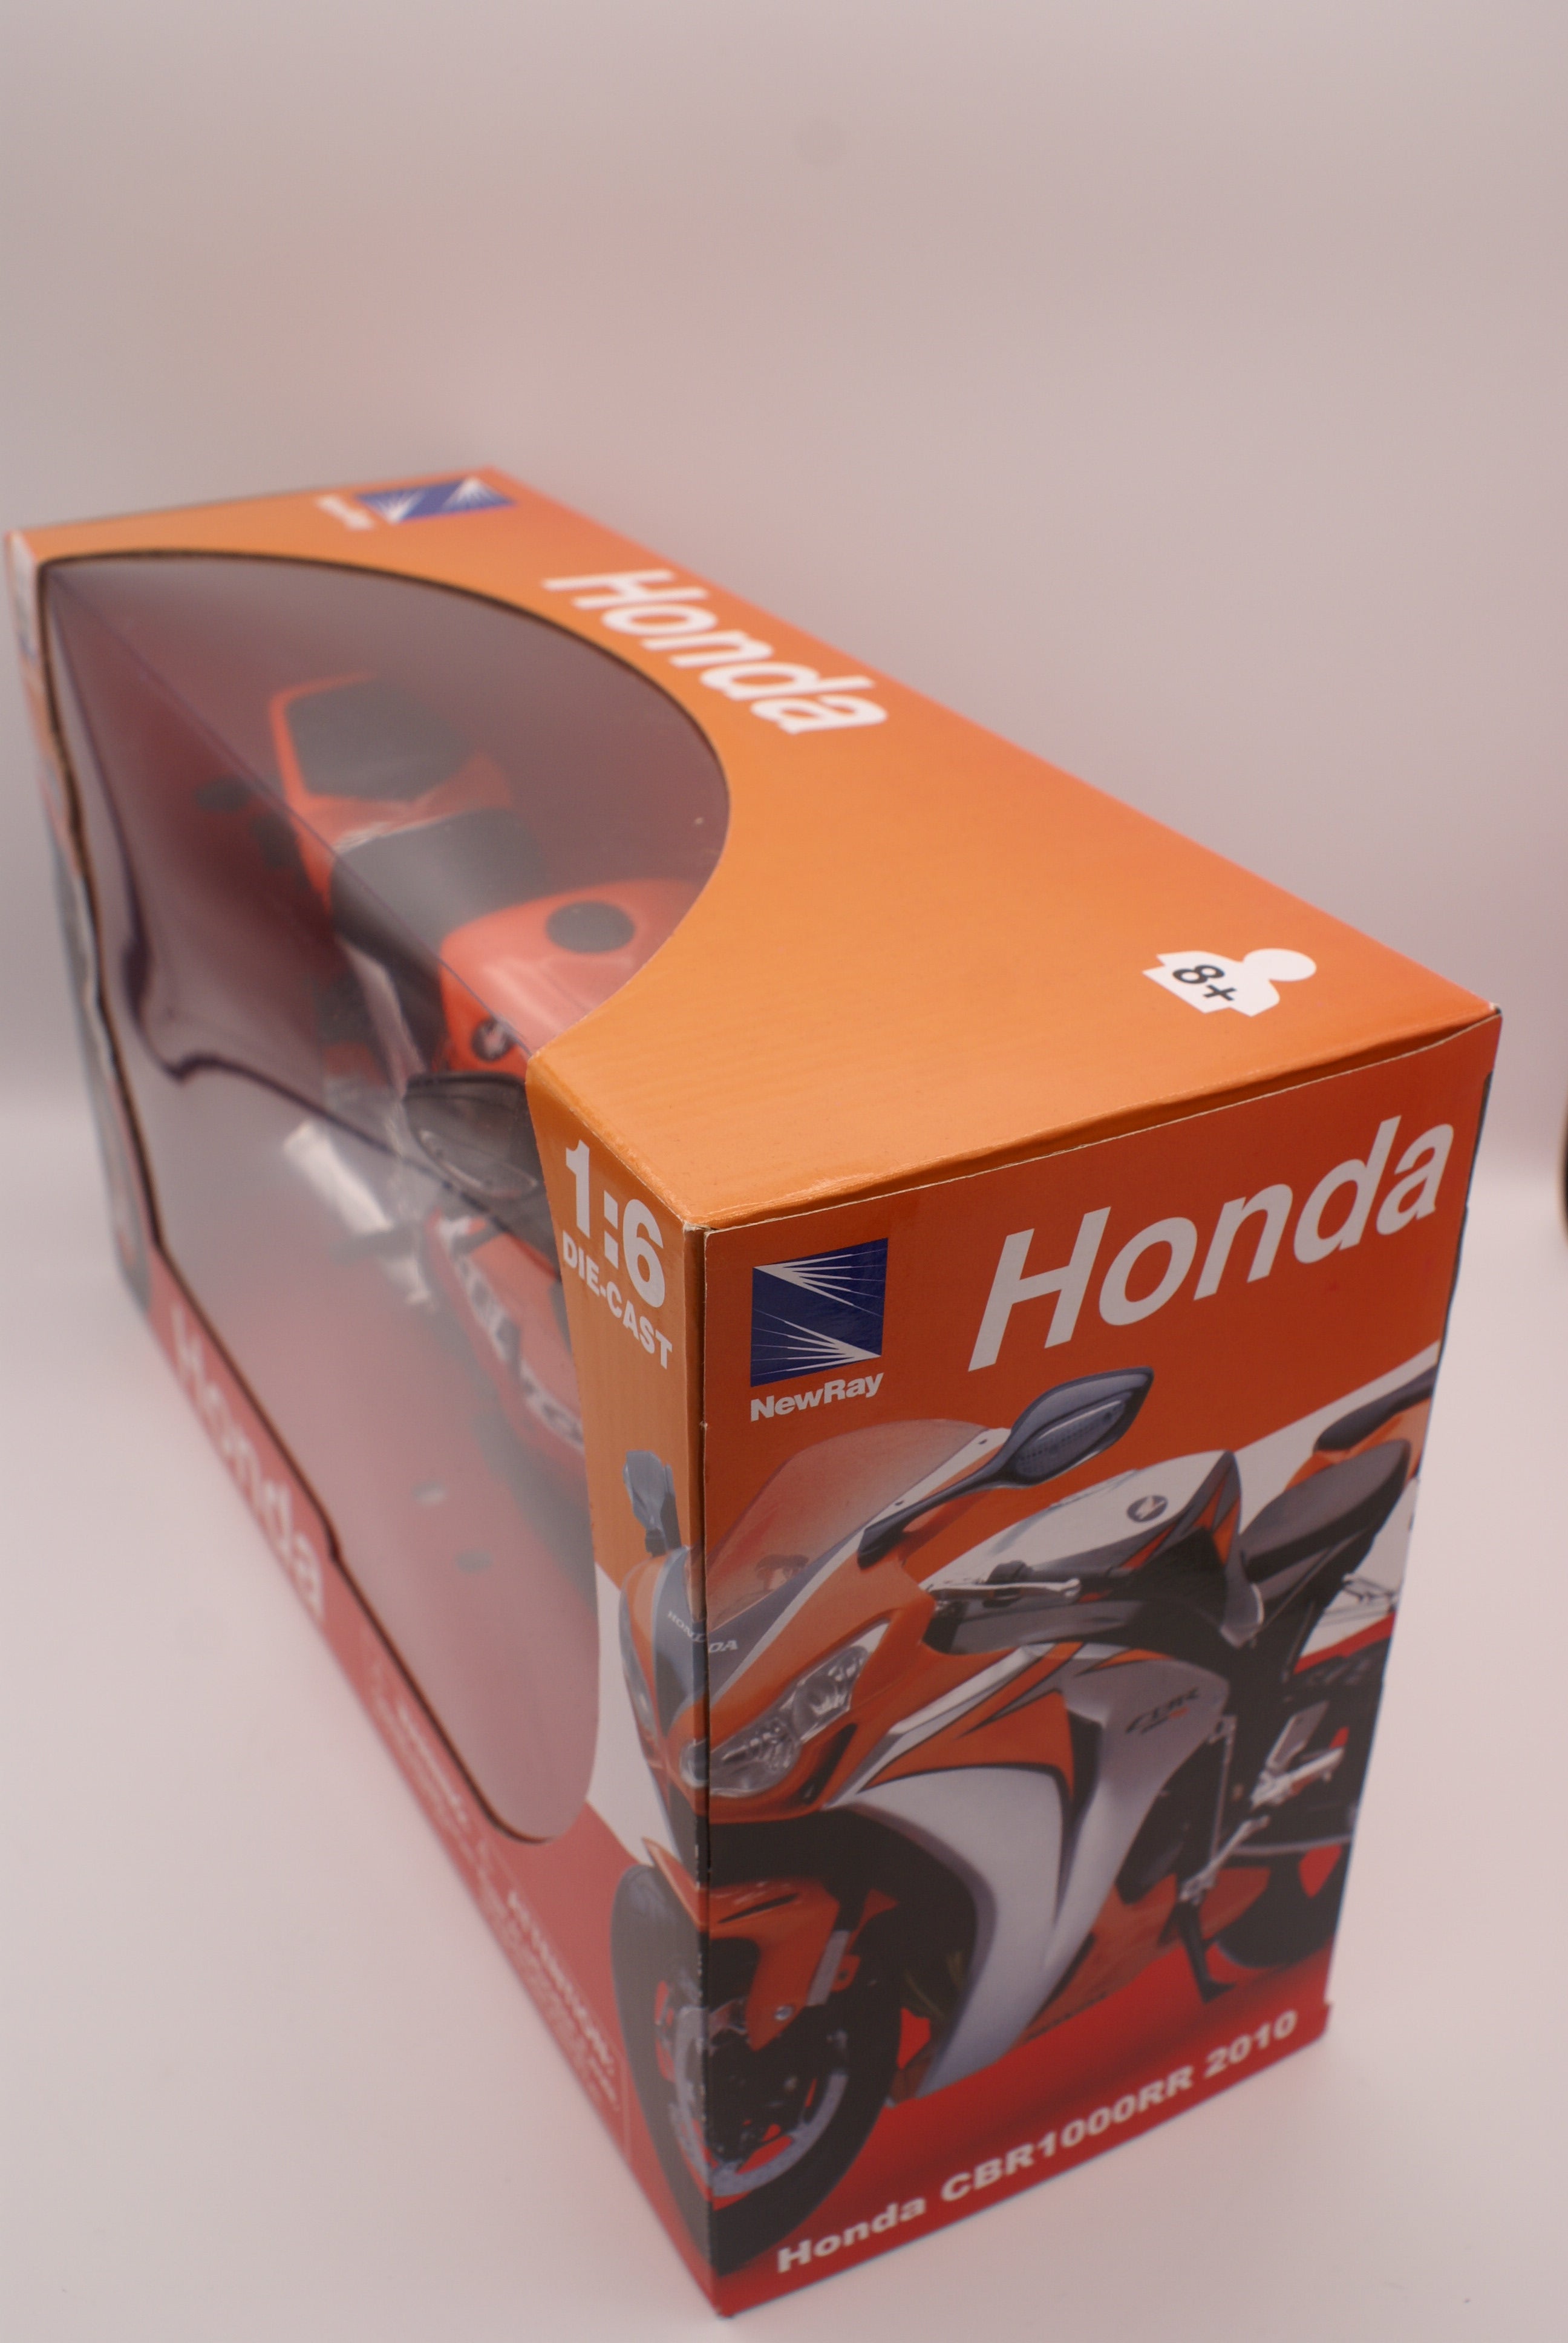 2010 Honda CBR 1000RR